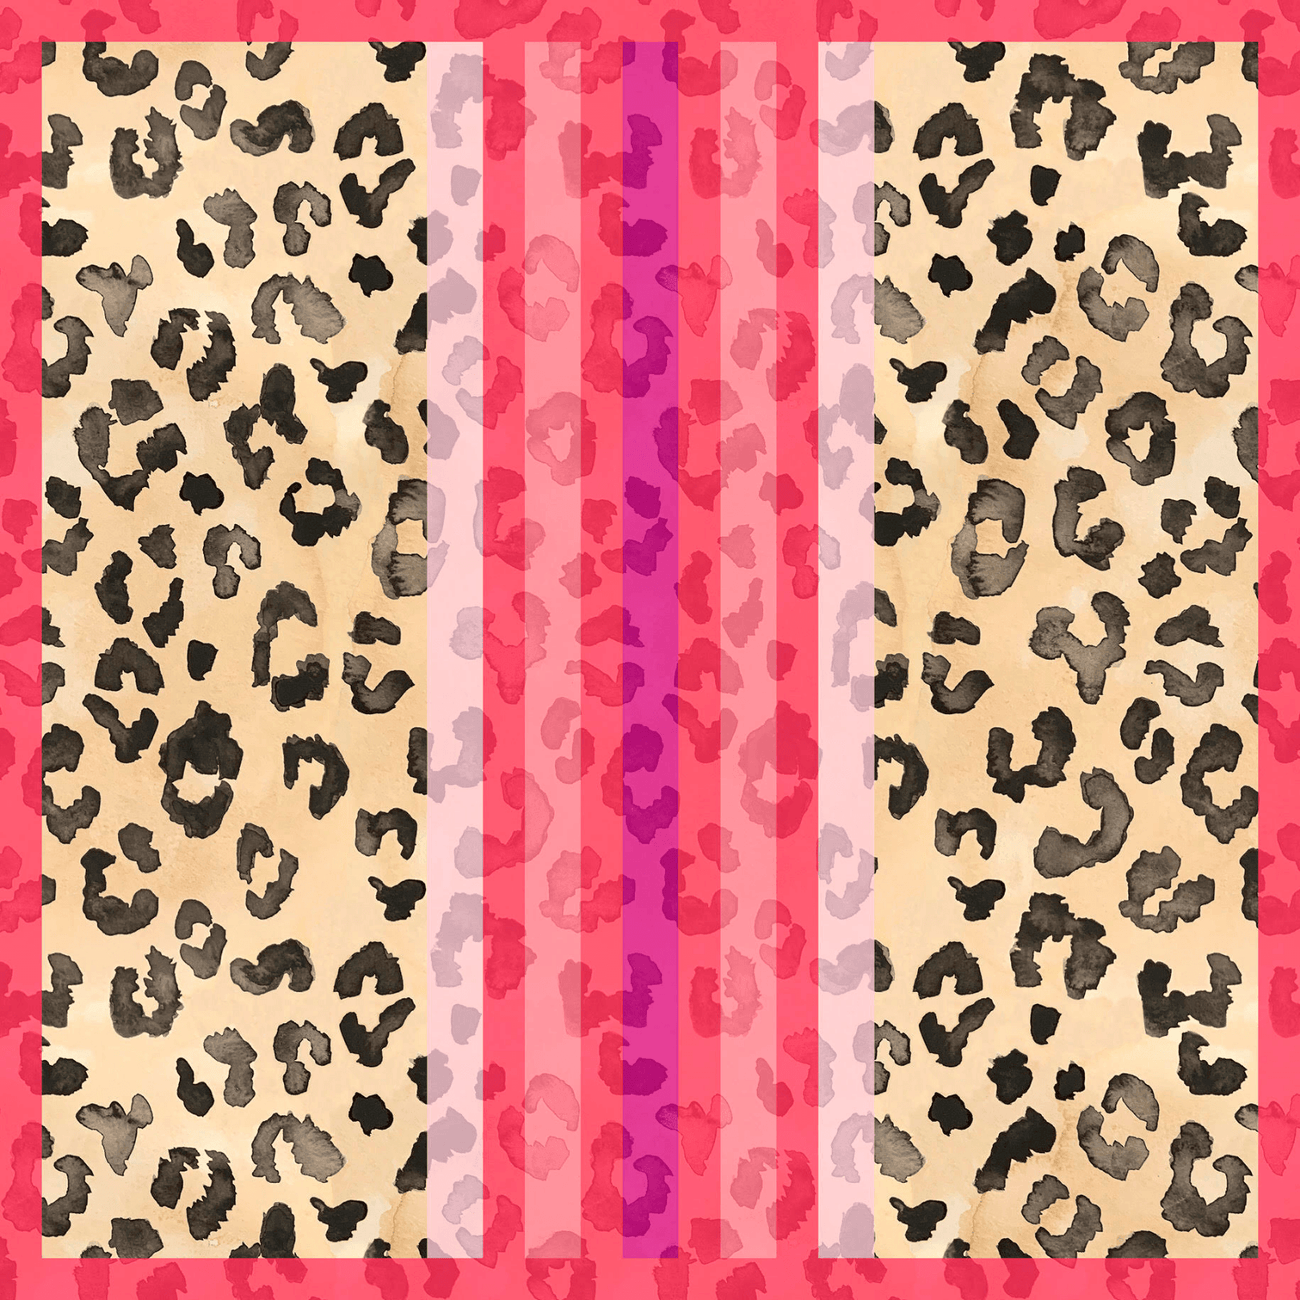 Leopard Silk Scarf - Allie & Elle